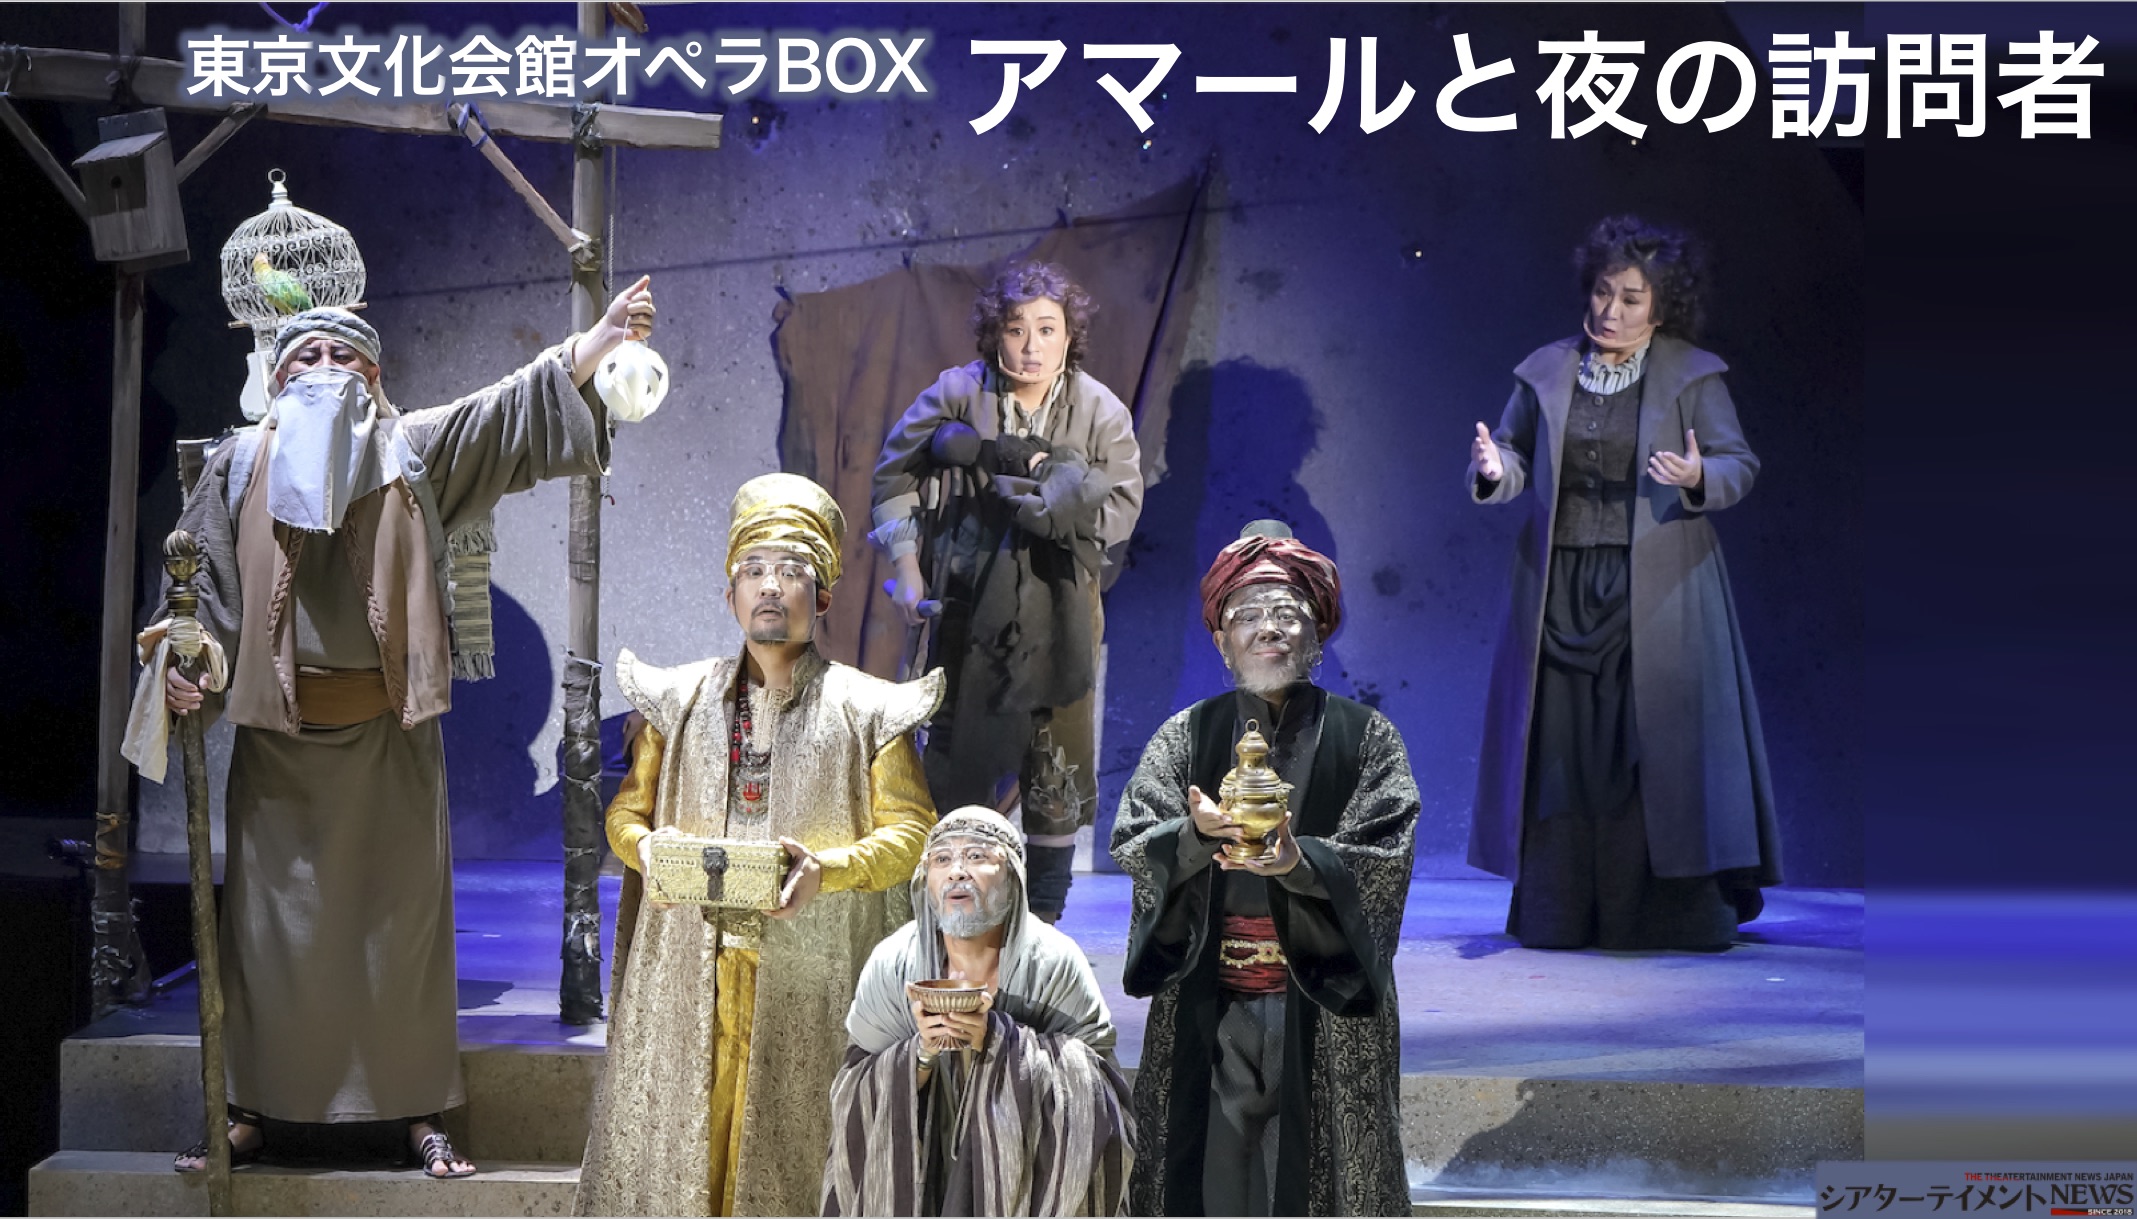 東京文化会館オペラBOX『アマールと夜の訪問者』今日的なオペラ、少年に奇跡が起こる | シアターテイメントNEWS